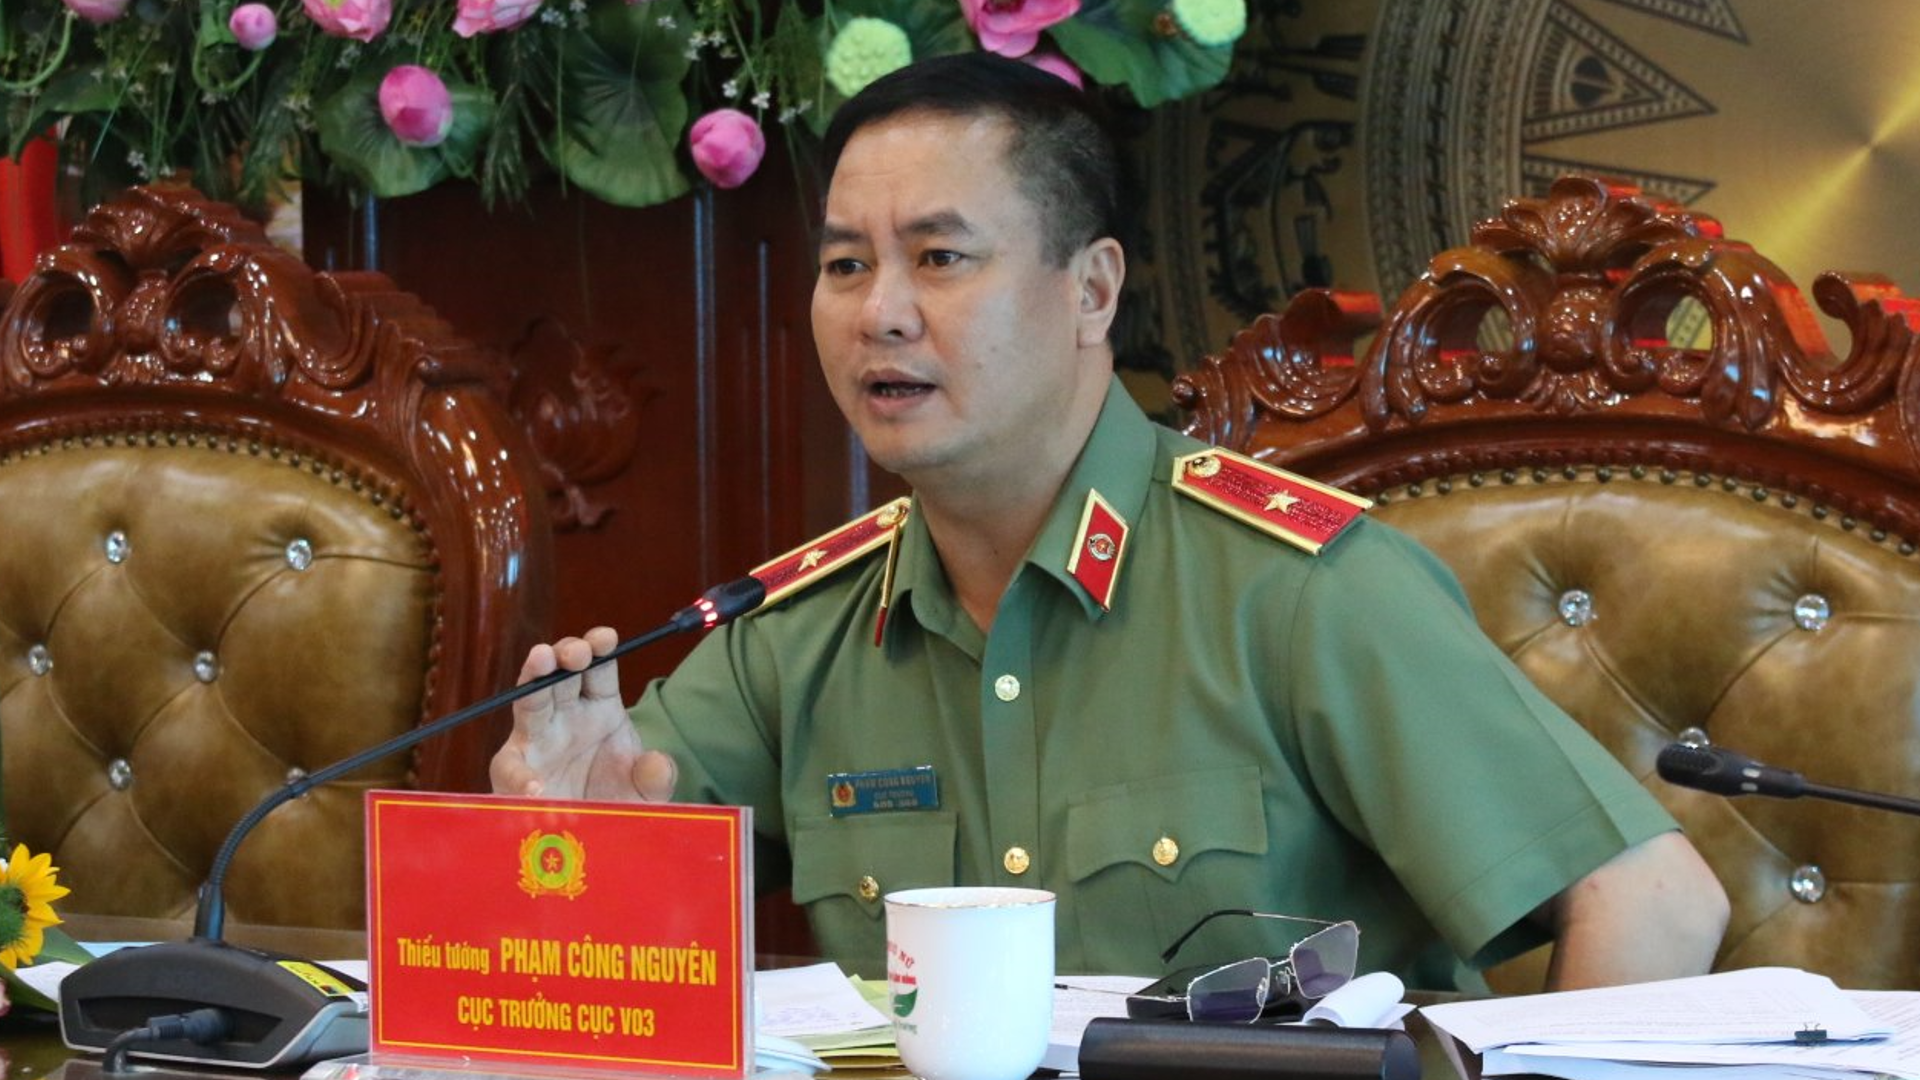 Thiếu tướng Phạm Công Nguyên: Bộ Công an rất cầu thị trong xây dựng luật do bộ chủ trì